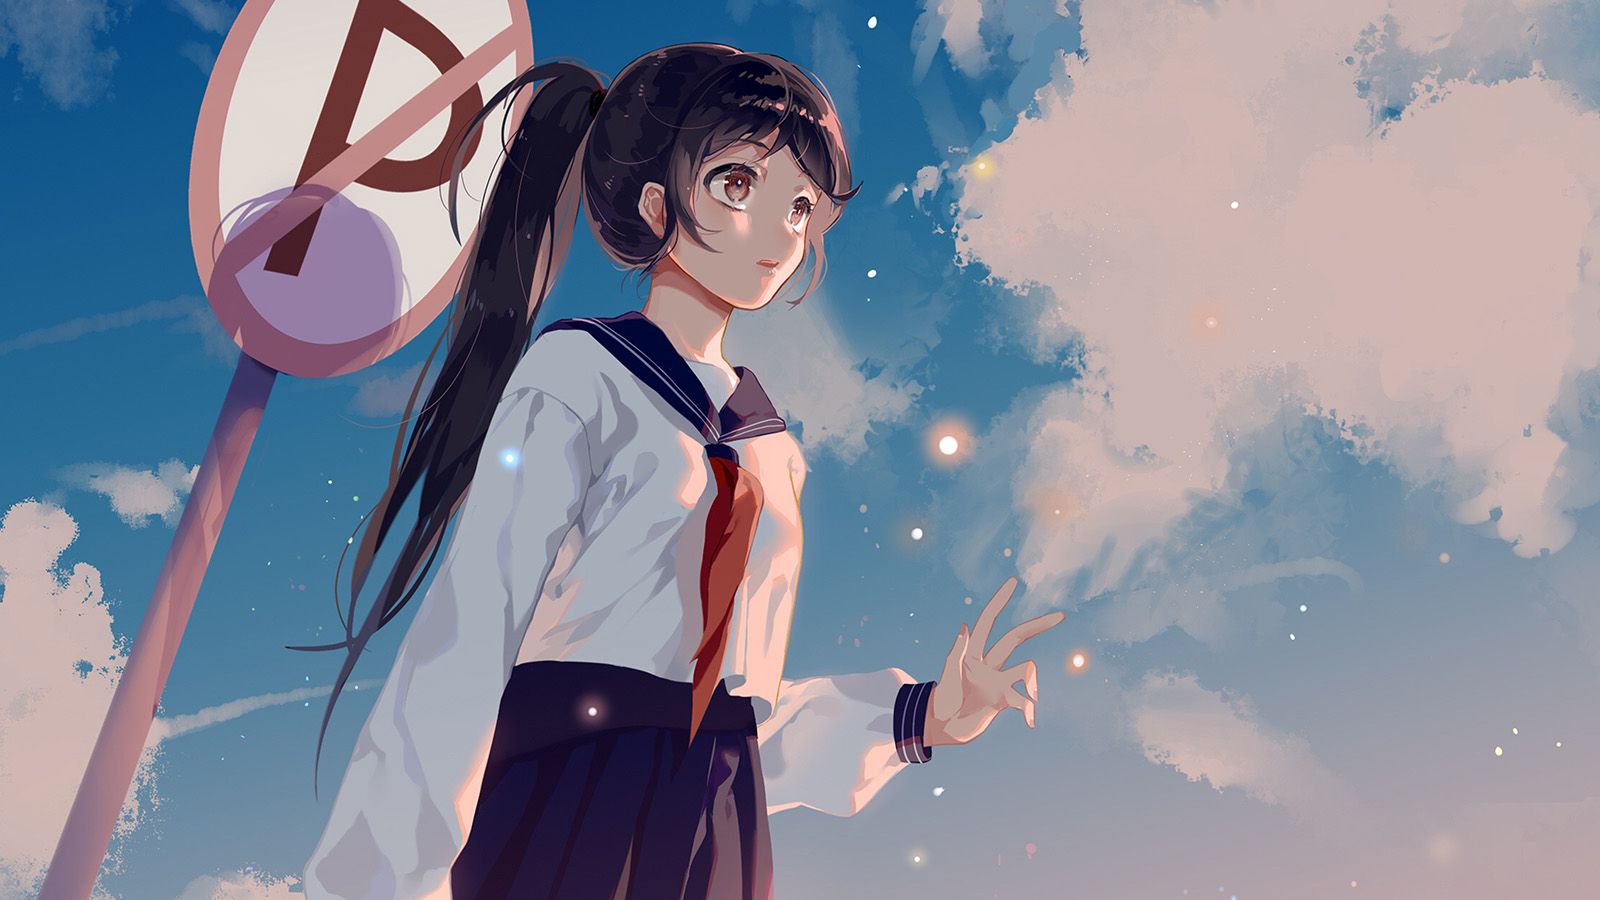 Girl School Girl Anime Sky Cloud Star Art Illustration Wallpaper